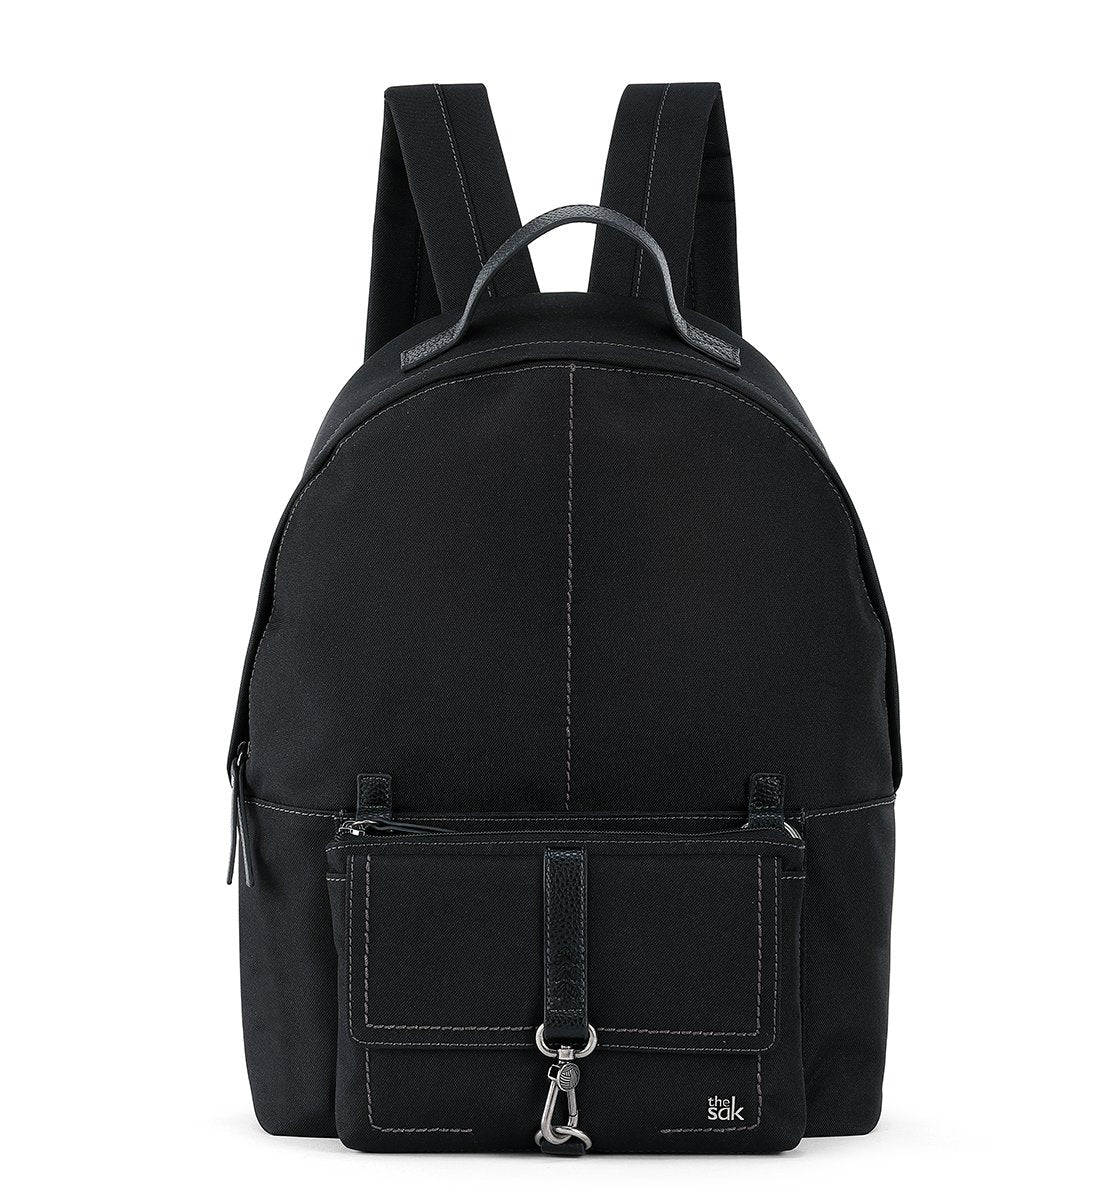 Globetrotter 2-in-1 Backpack